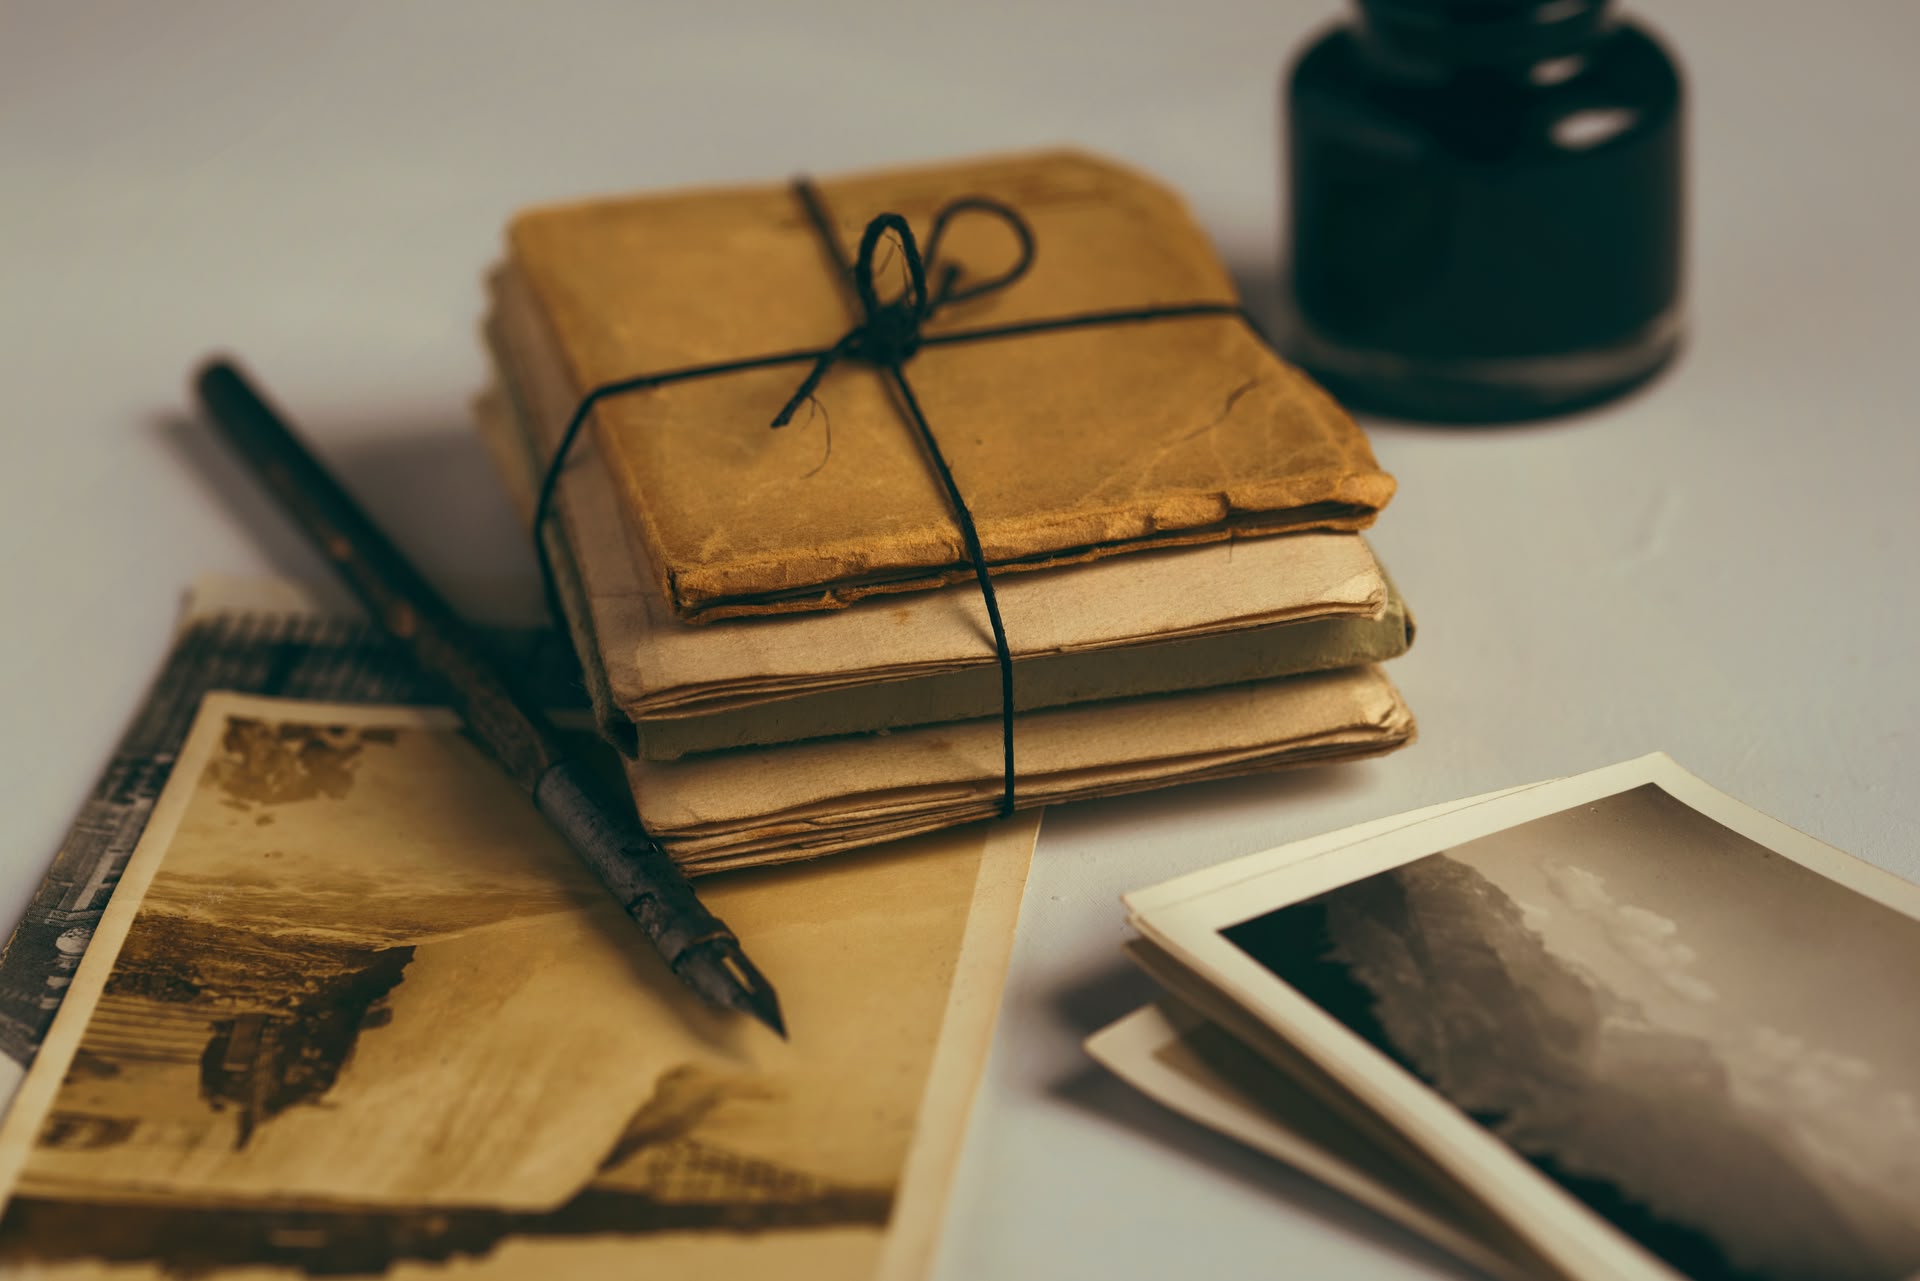 Alte Fotos und zusammengebundene Notizbücher liegen neben einem Füller